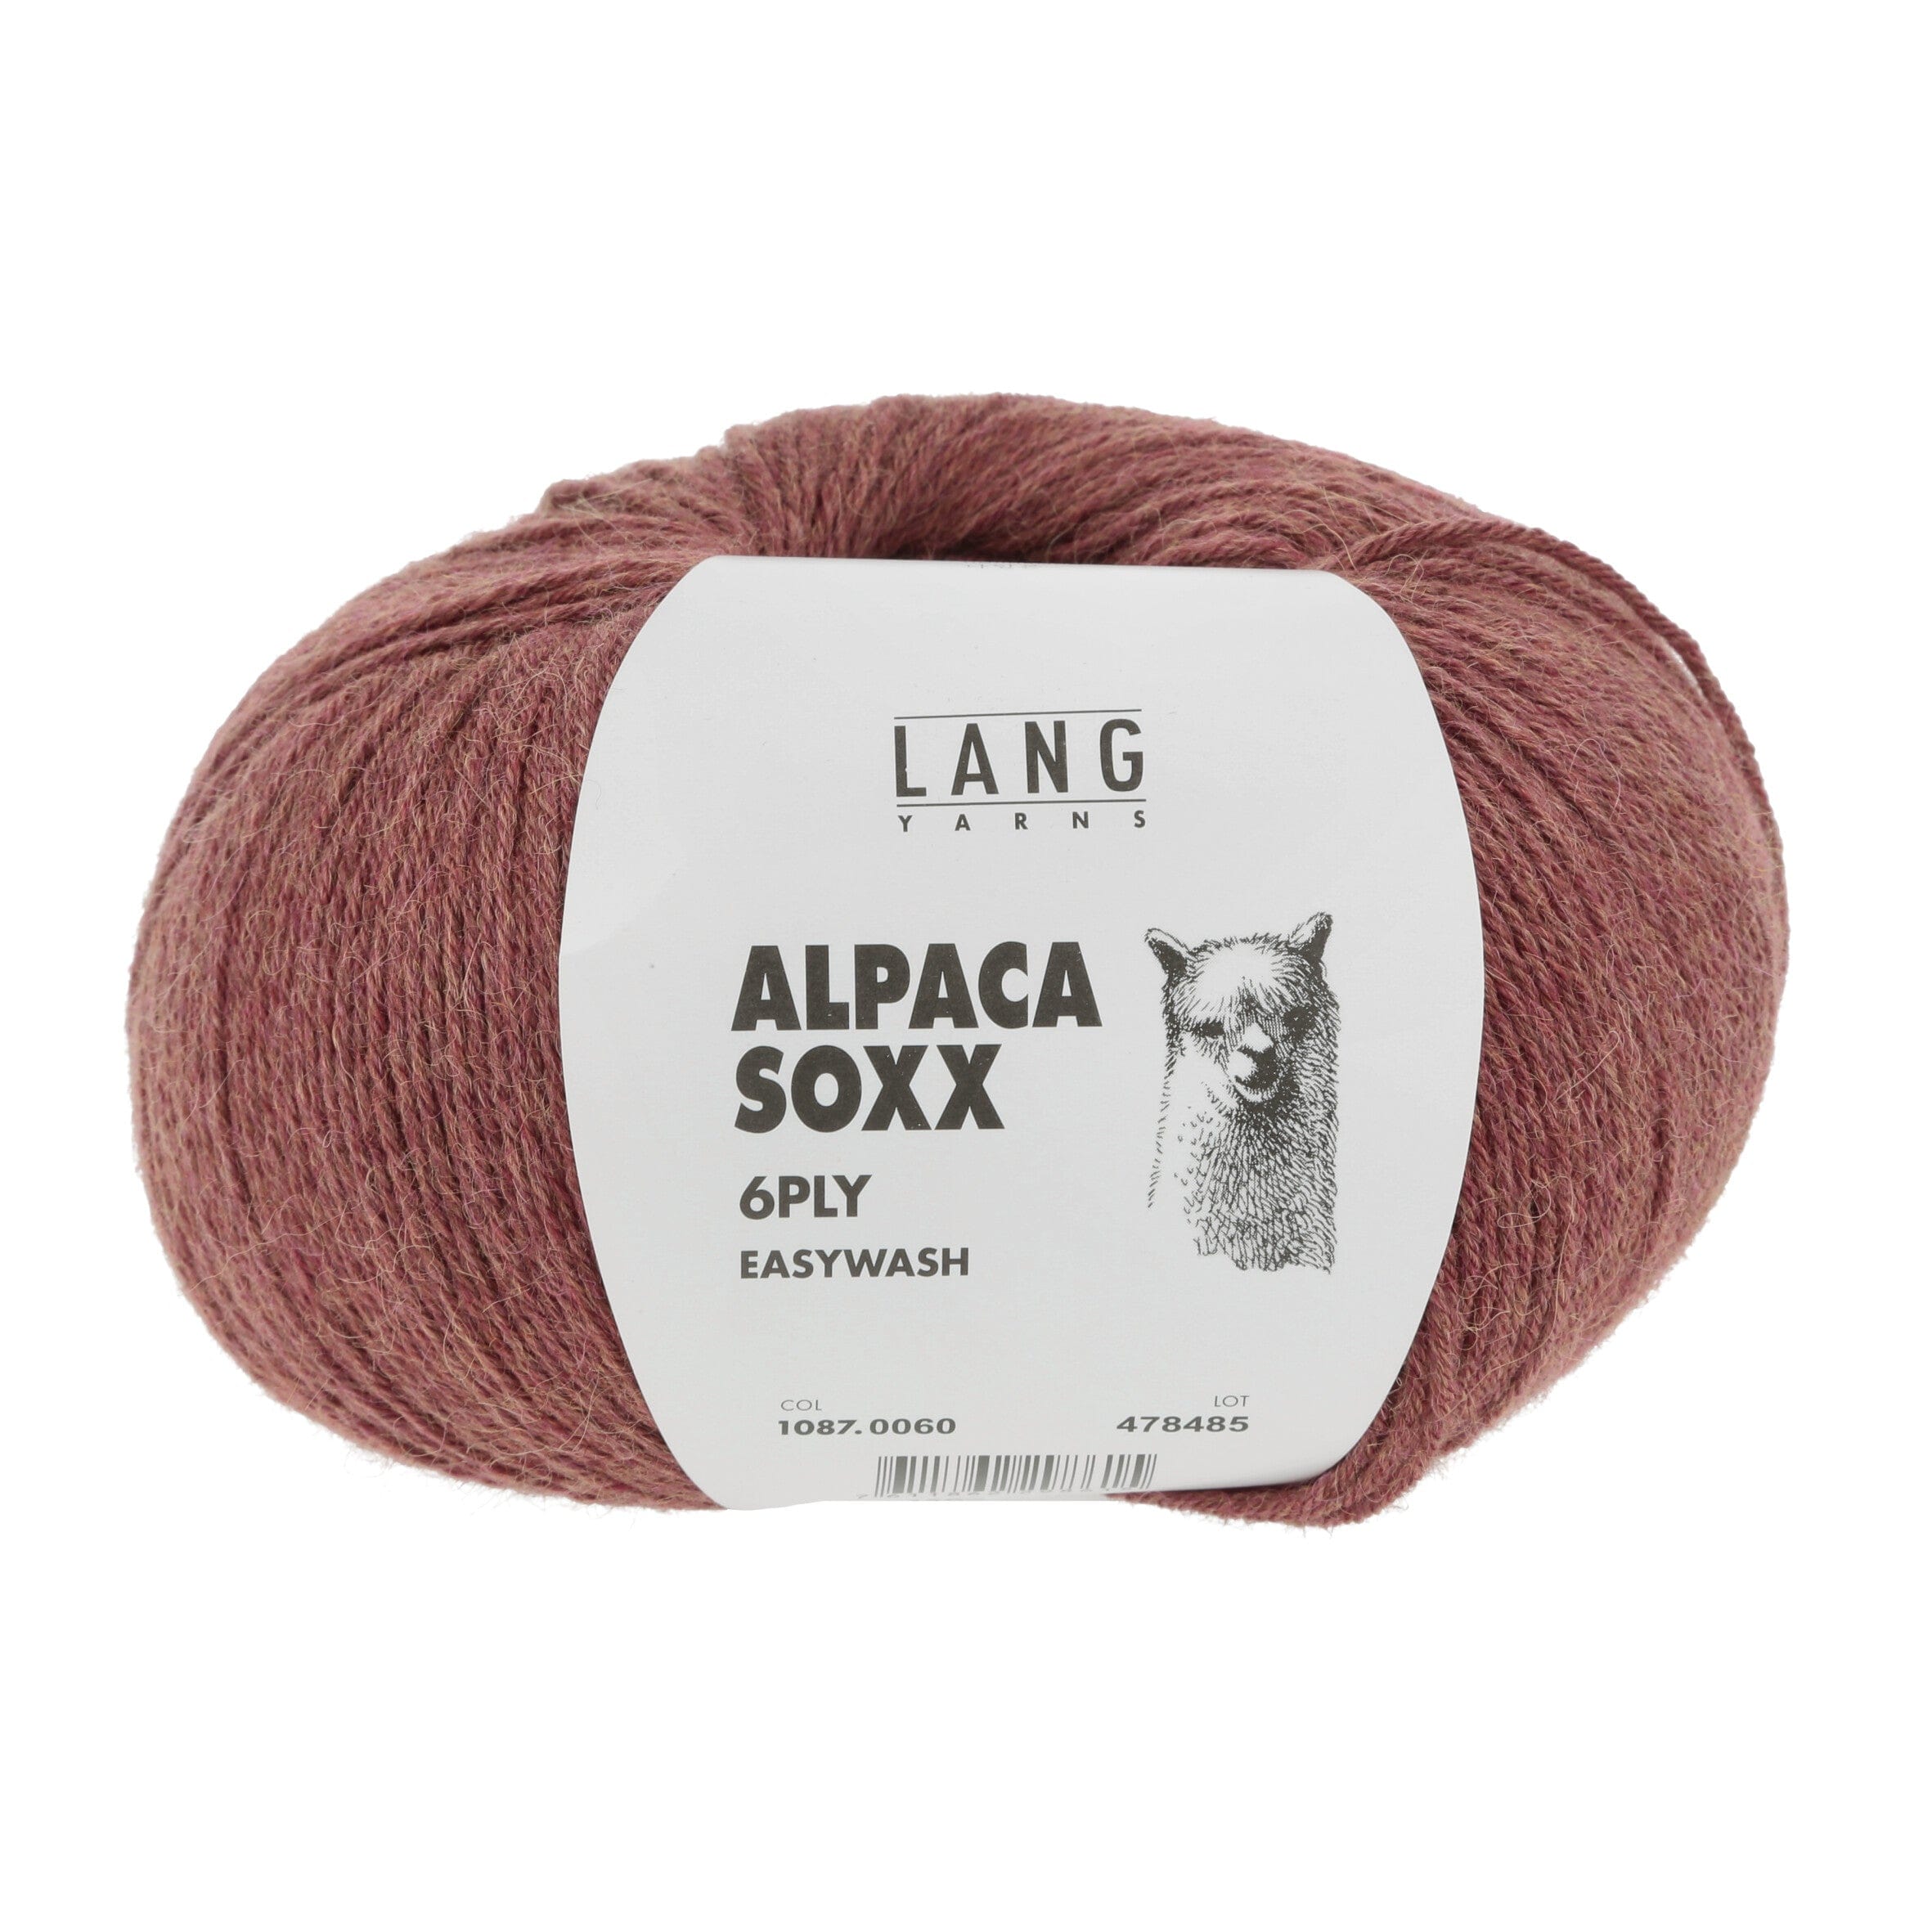 ALPACA SOXX 6-FACH/6-PLY von LANG YARNS jetzt online kaufen bei OONIQUE